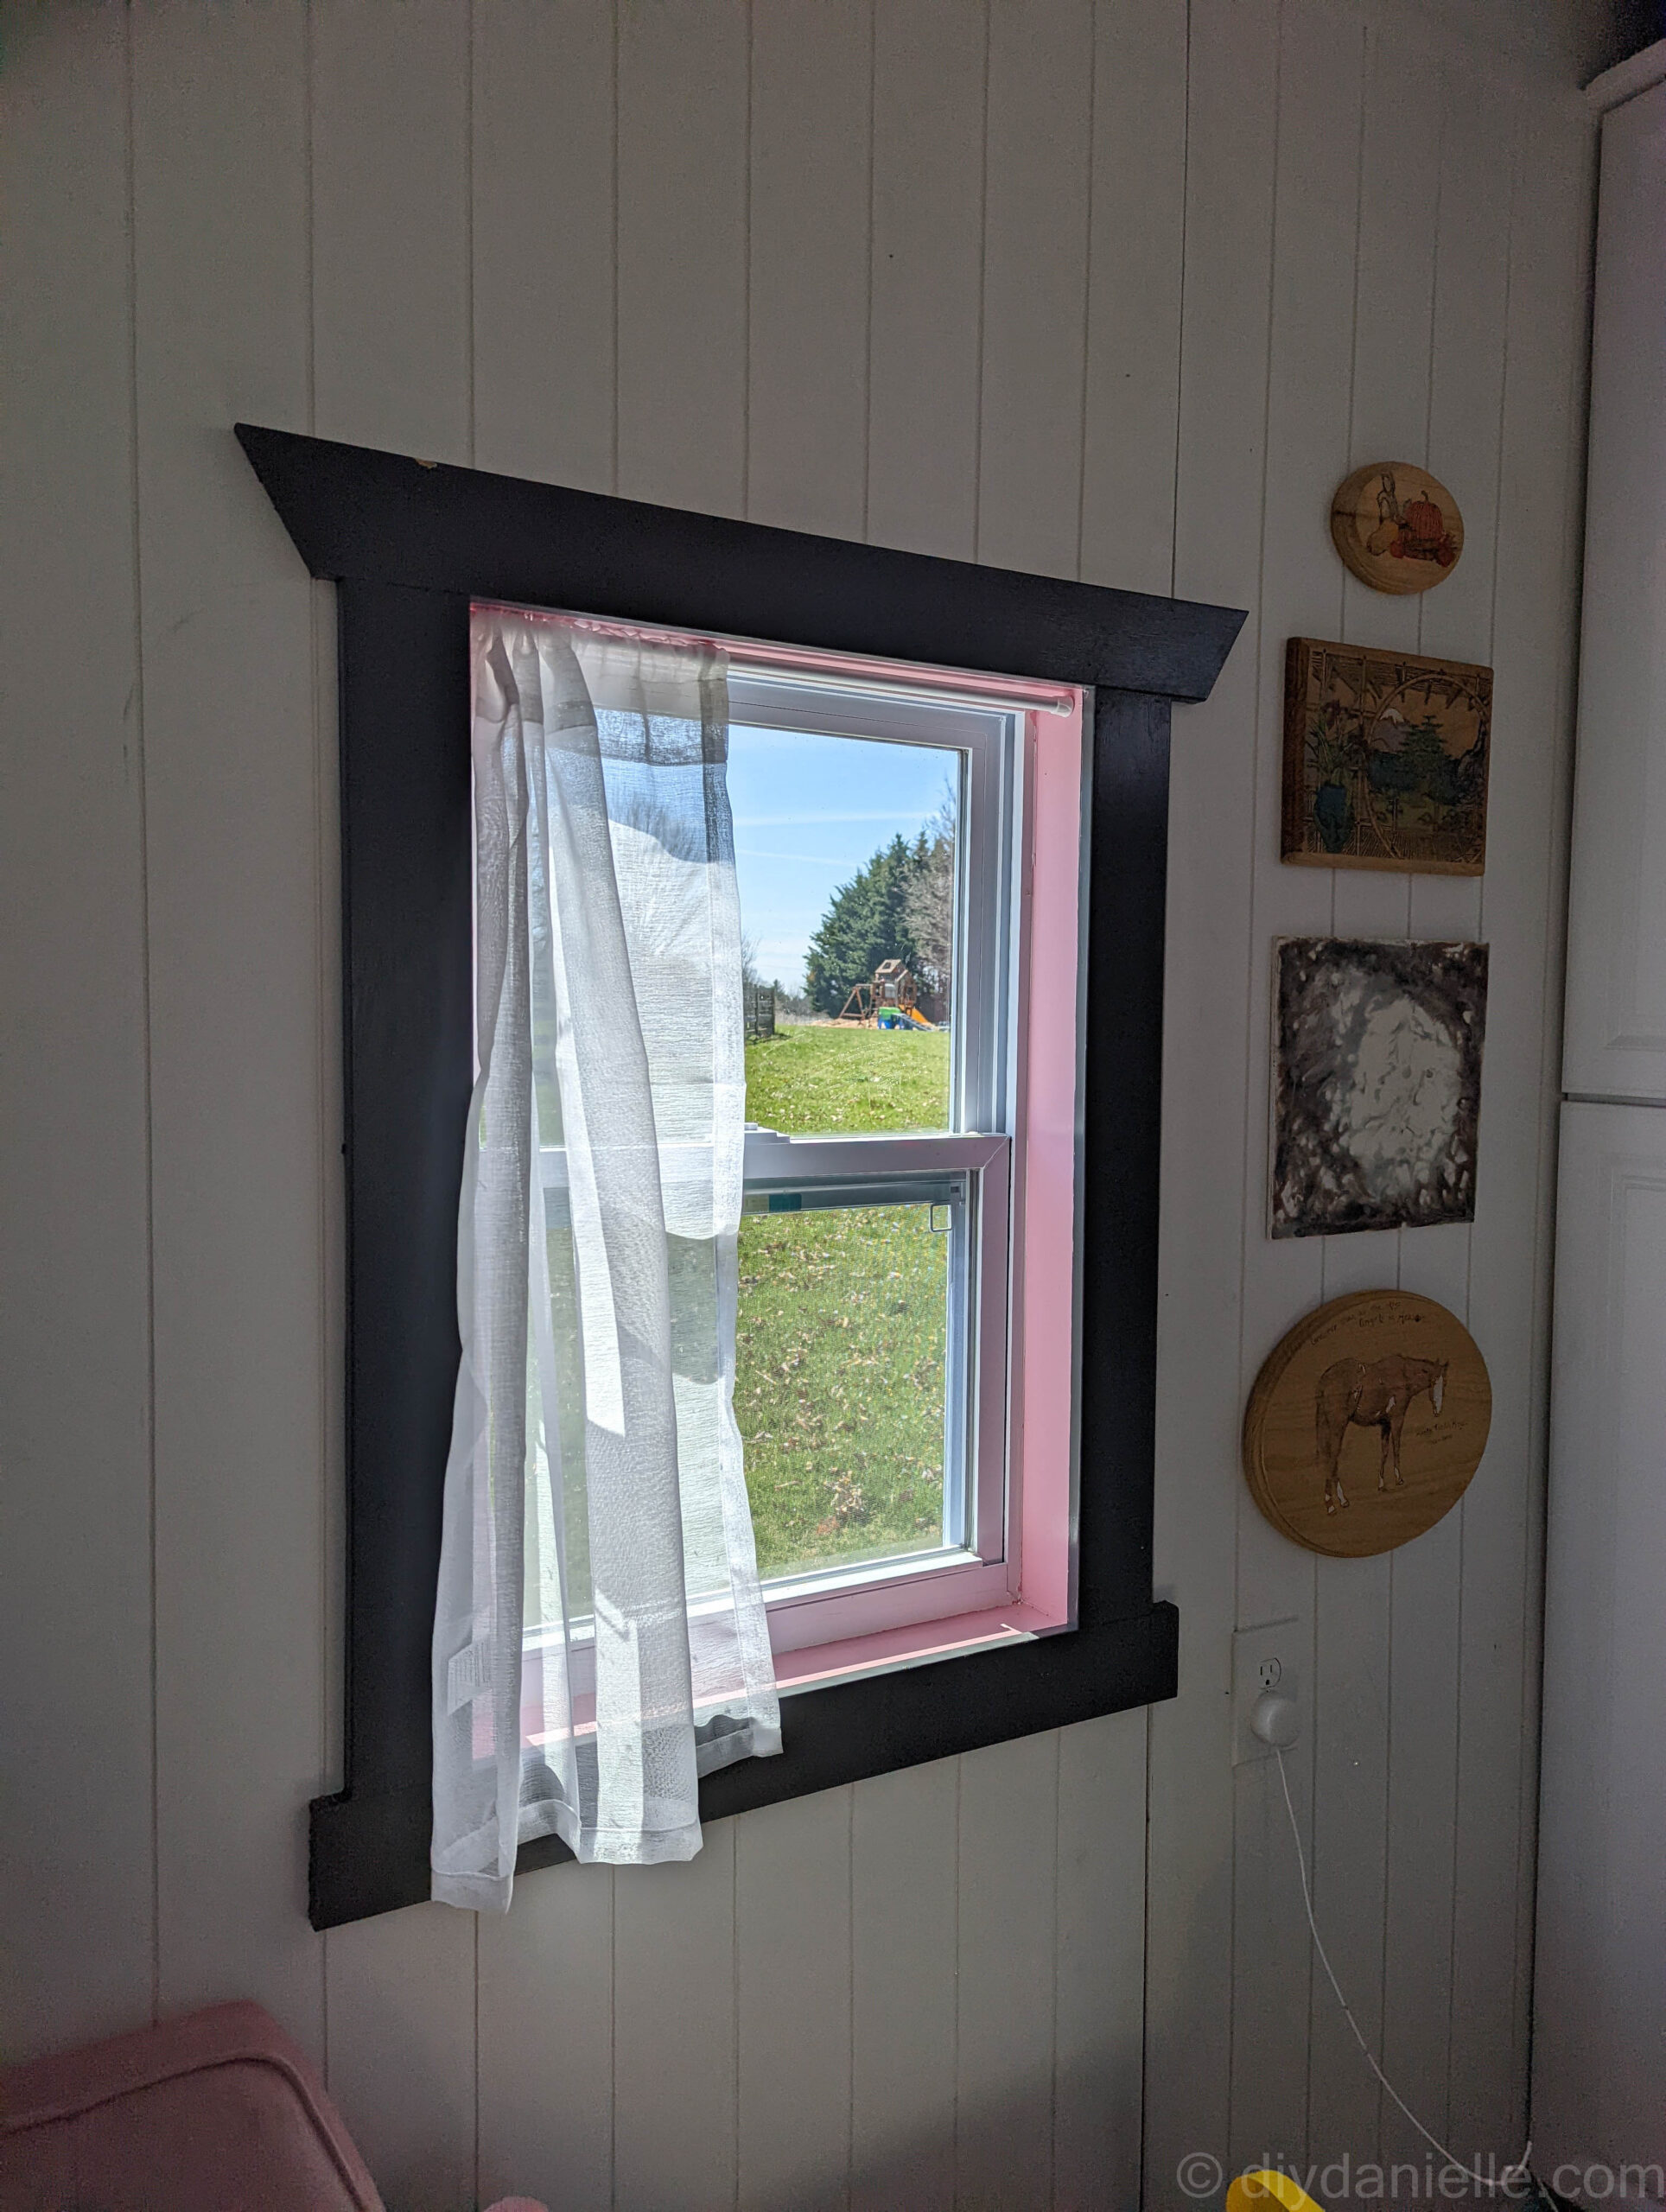 interior window frame designs